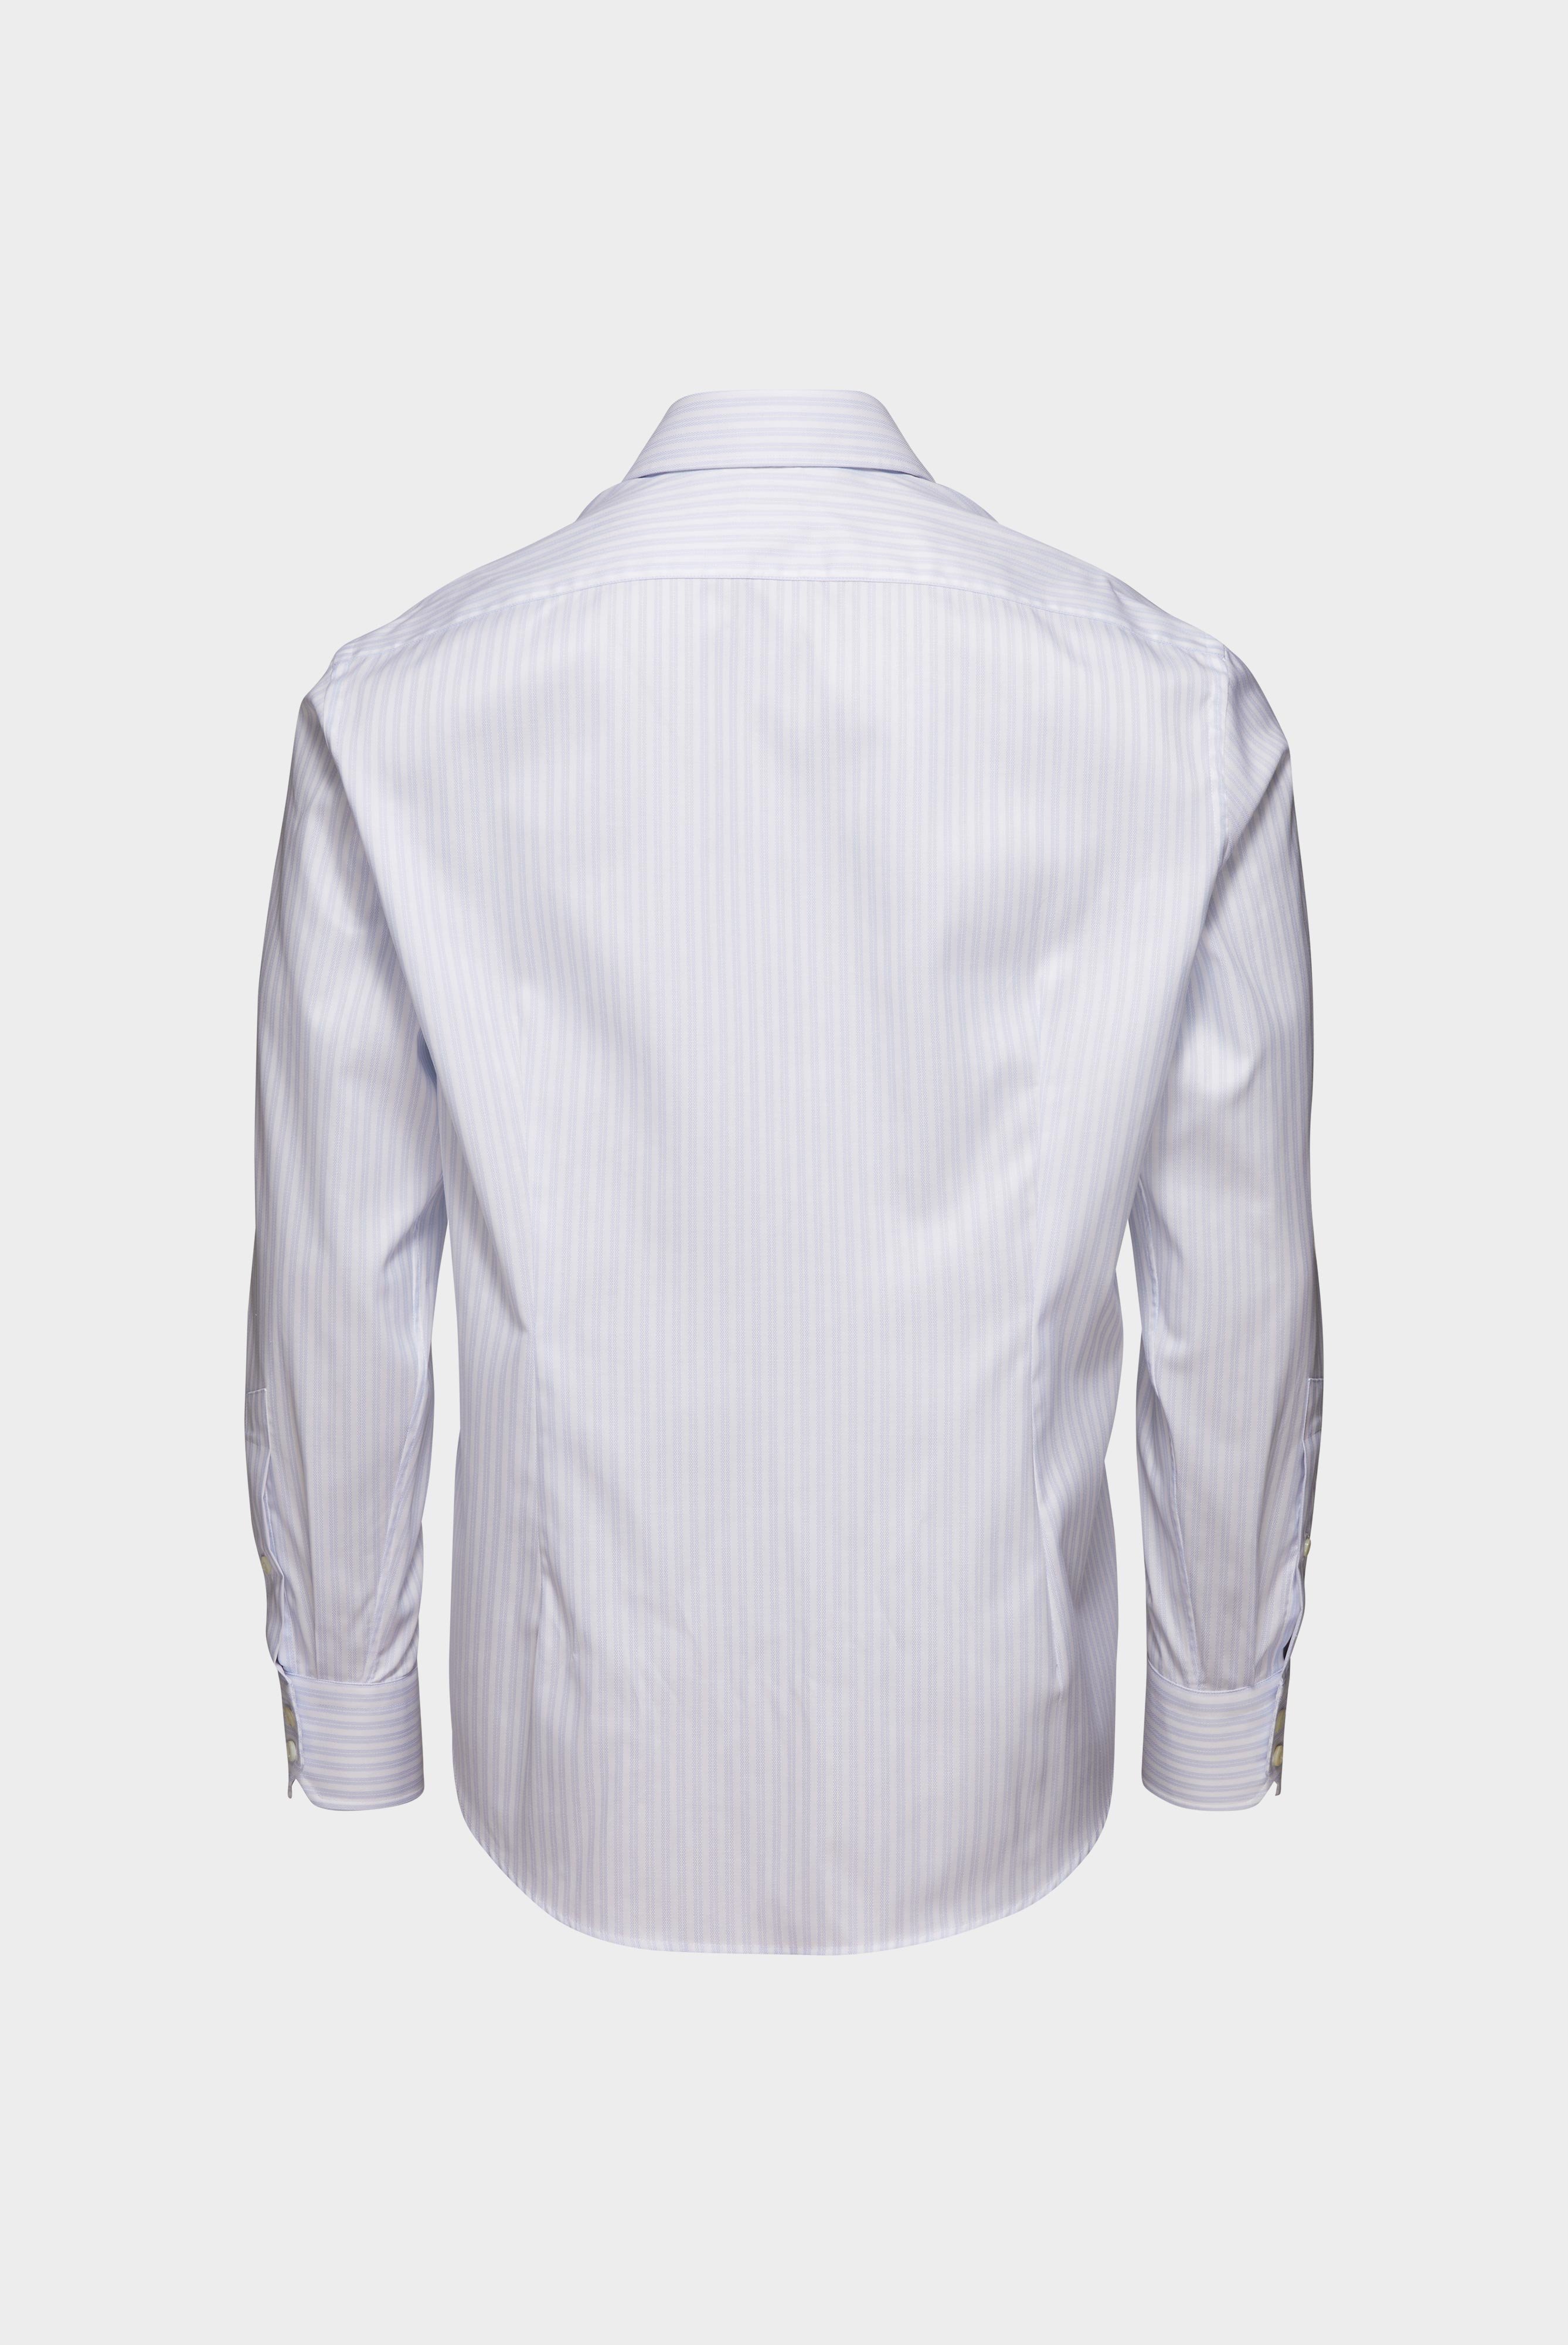 Bügelleichte Hemden+Bügelfreies Hemd mit Streifen Tailor Fit+20.2020.BQ.161106.007.45